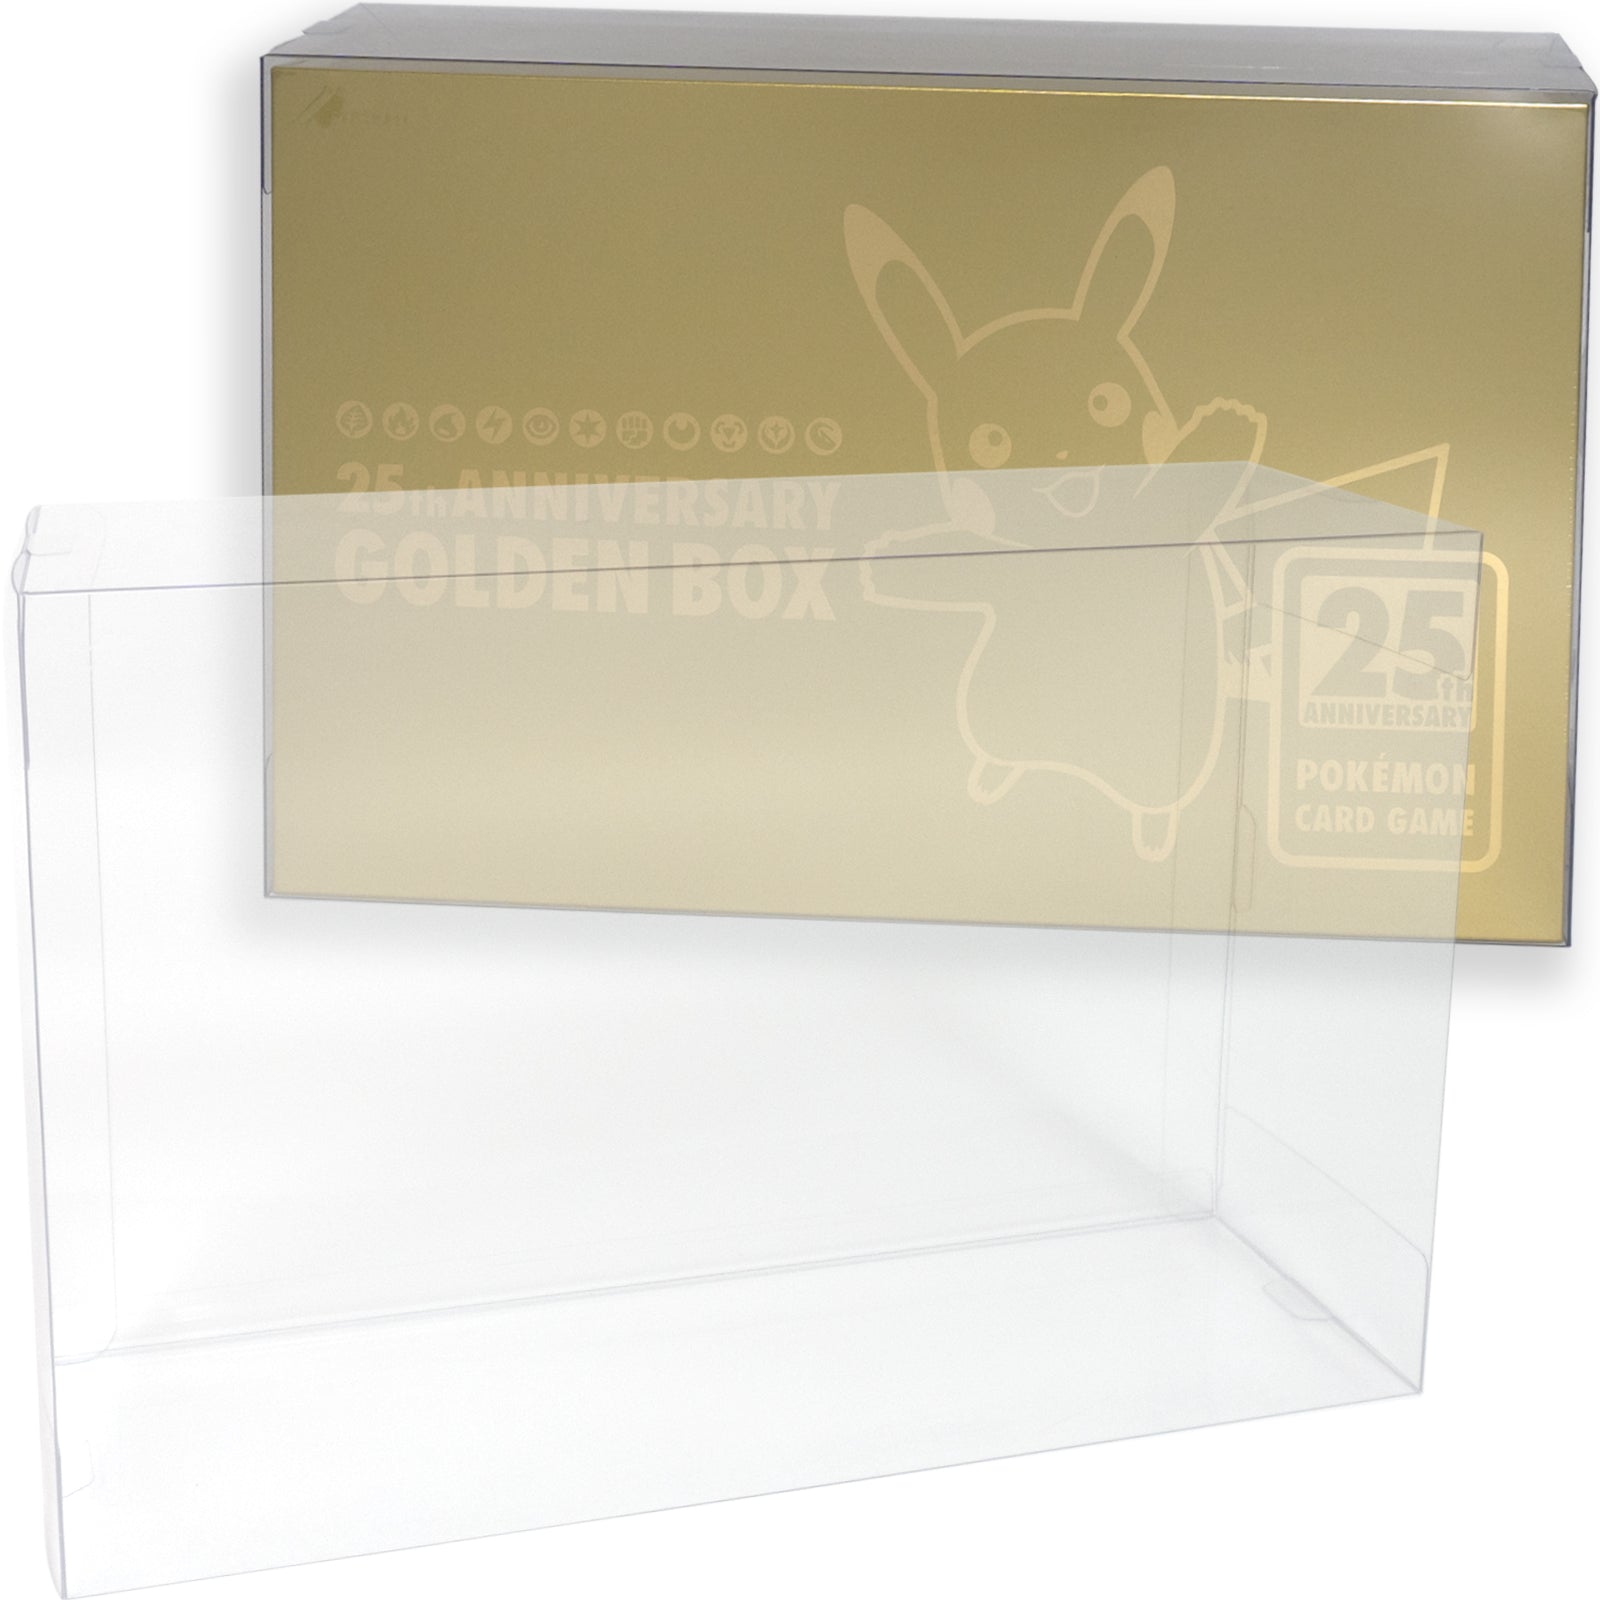 ポケモンカードゲーム25th ANNIVERSARY GOLDEN BOX